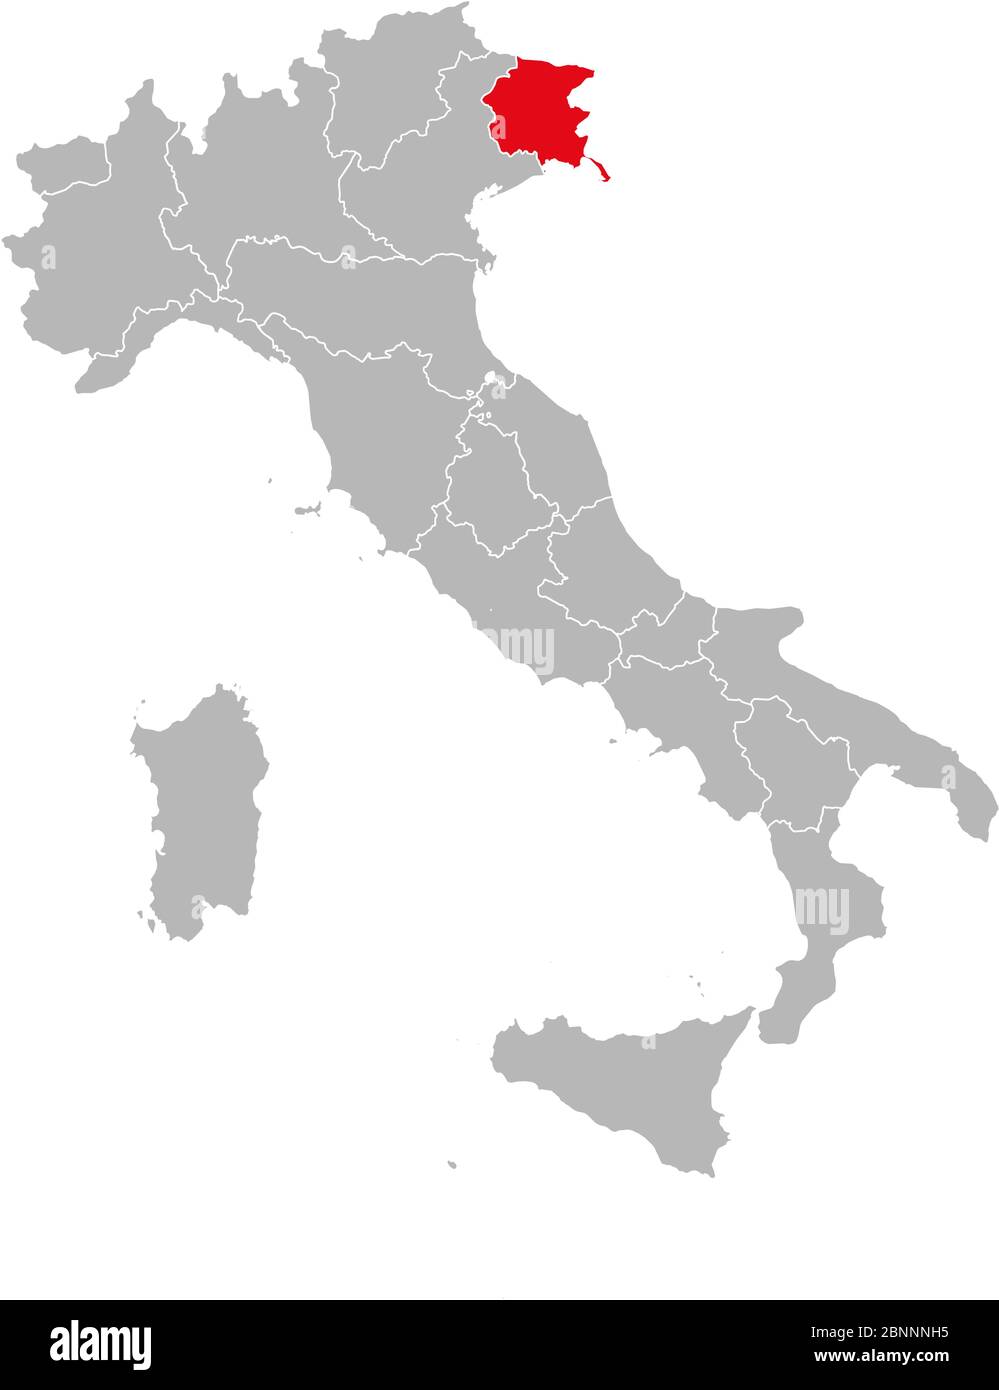 Friuli venecia julia marcada en rojo en el mapa de italia. Fondo gris. Mapa político italiano. Ilustración del Vector